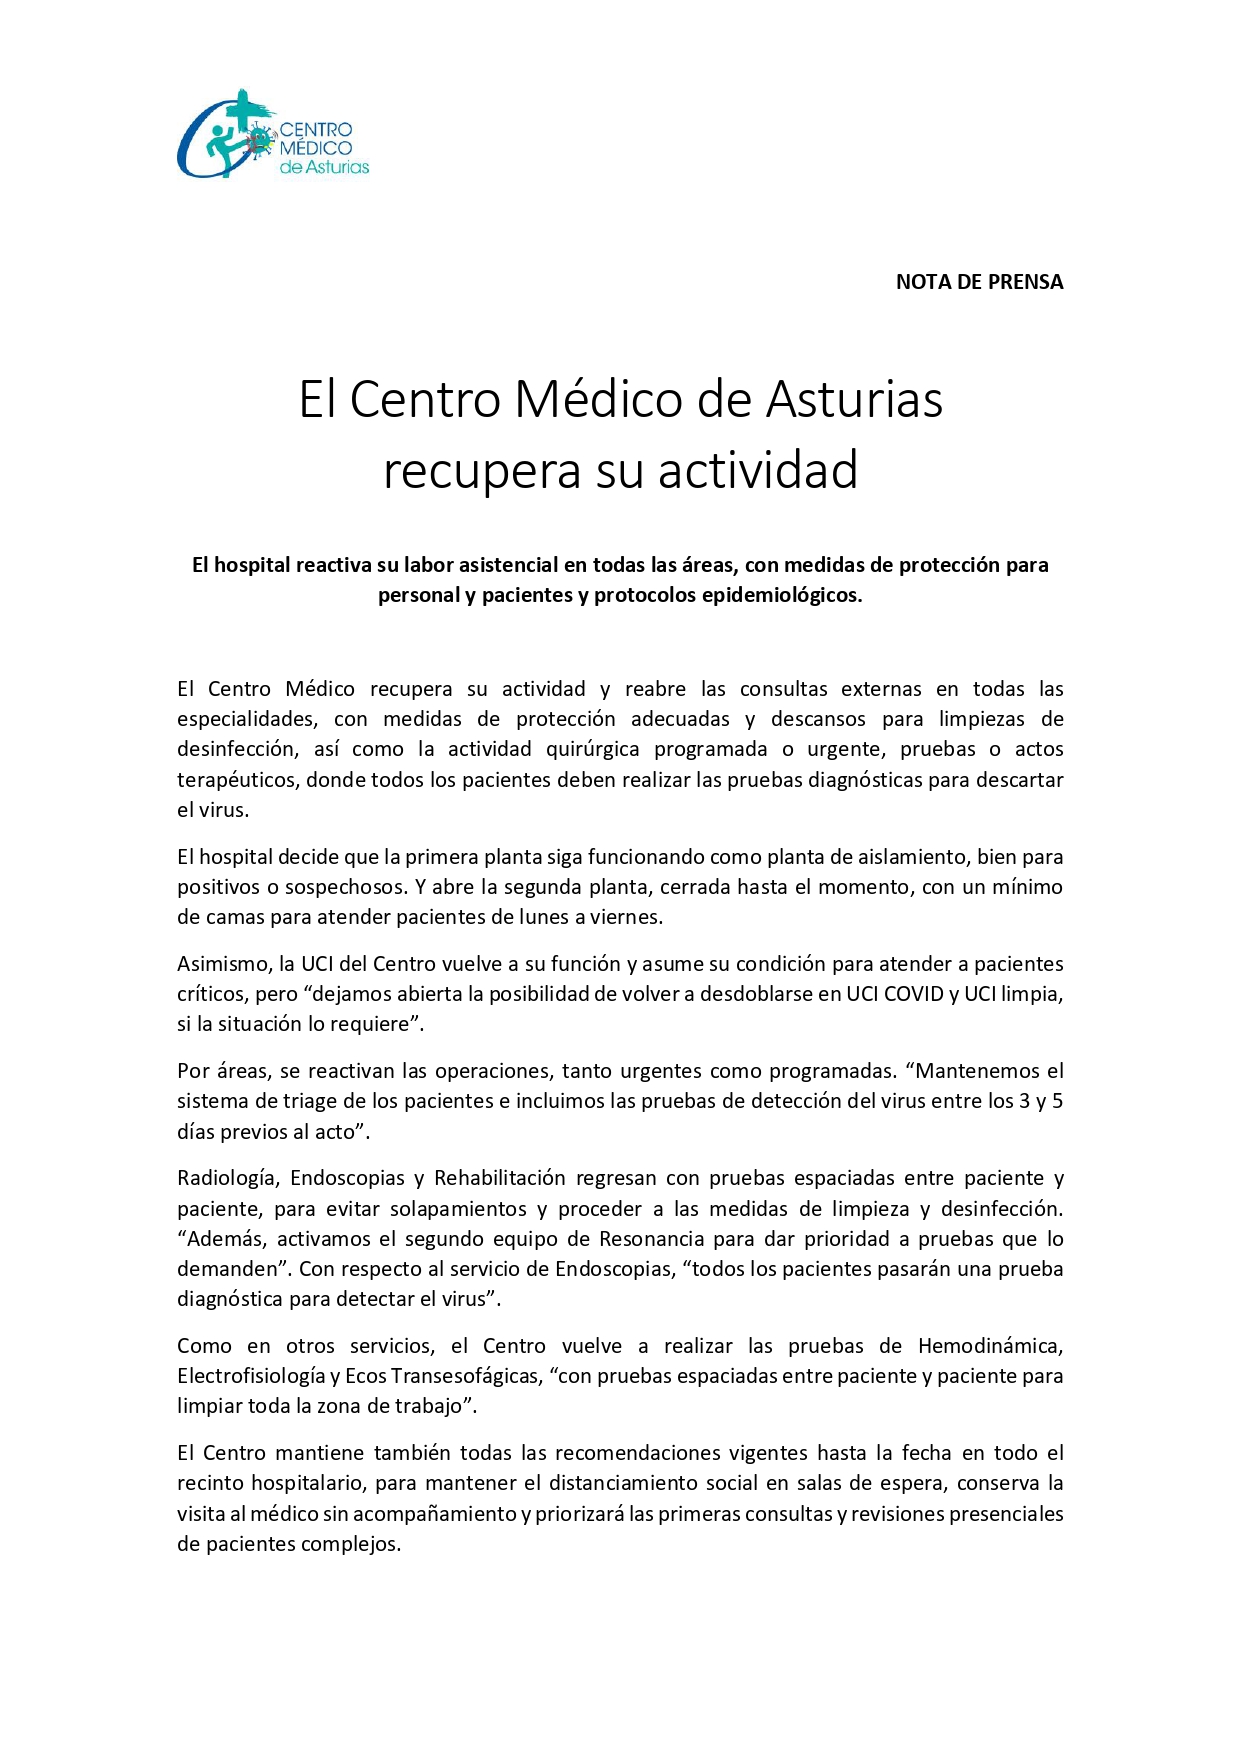 El Centro Mdico de Asturias recupera su actividad